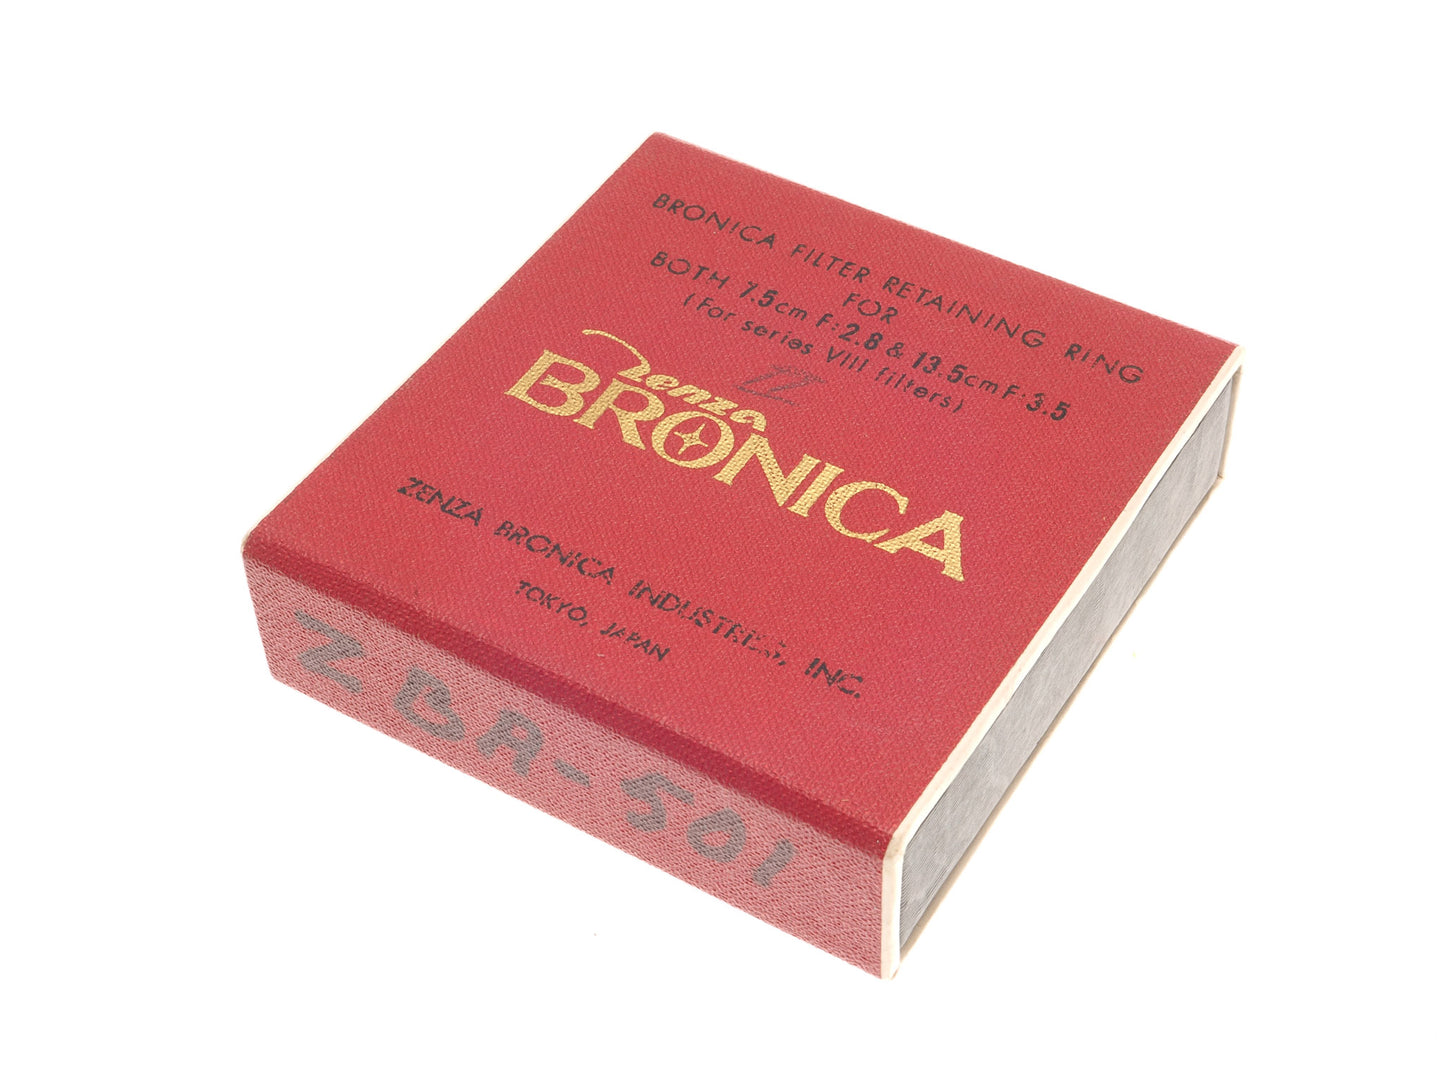 Zenza Bronica Series VIII Retaining Ring for 7.5cm & 13.5cm Lenses